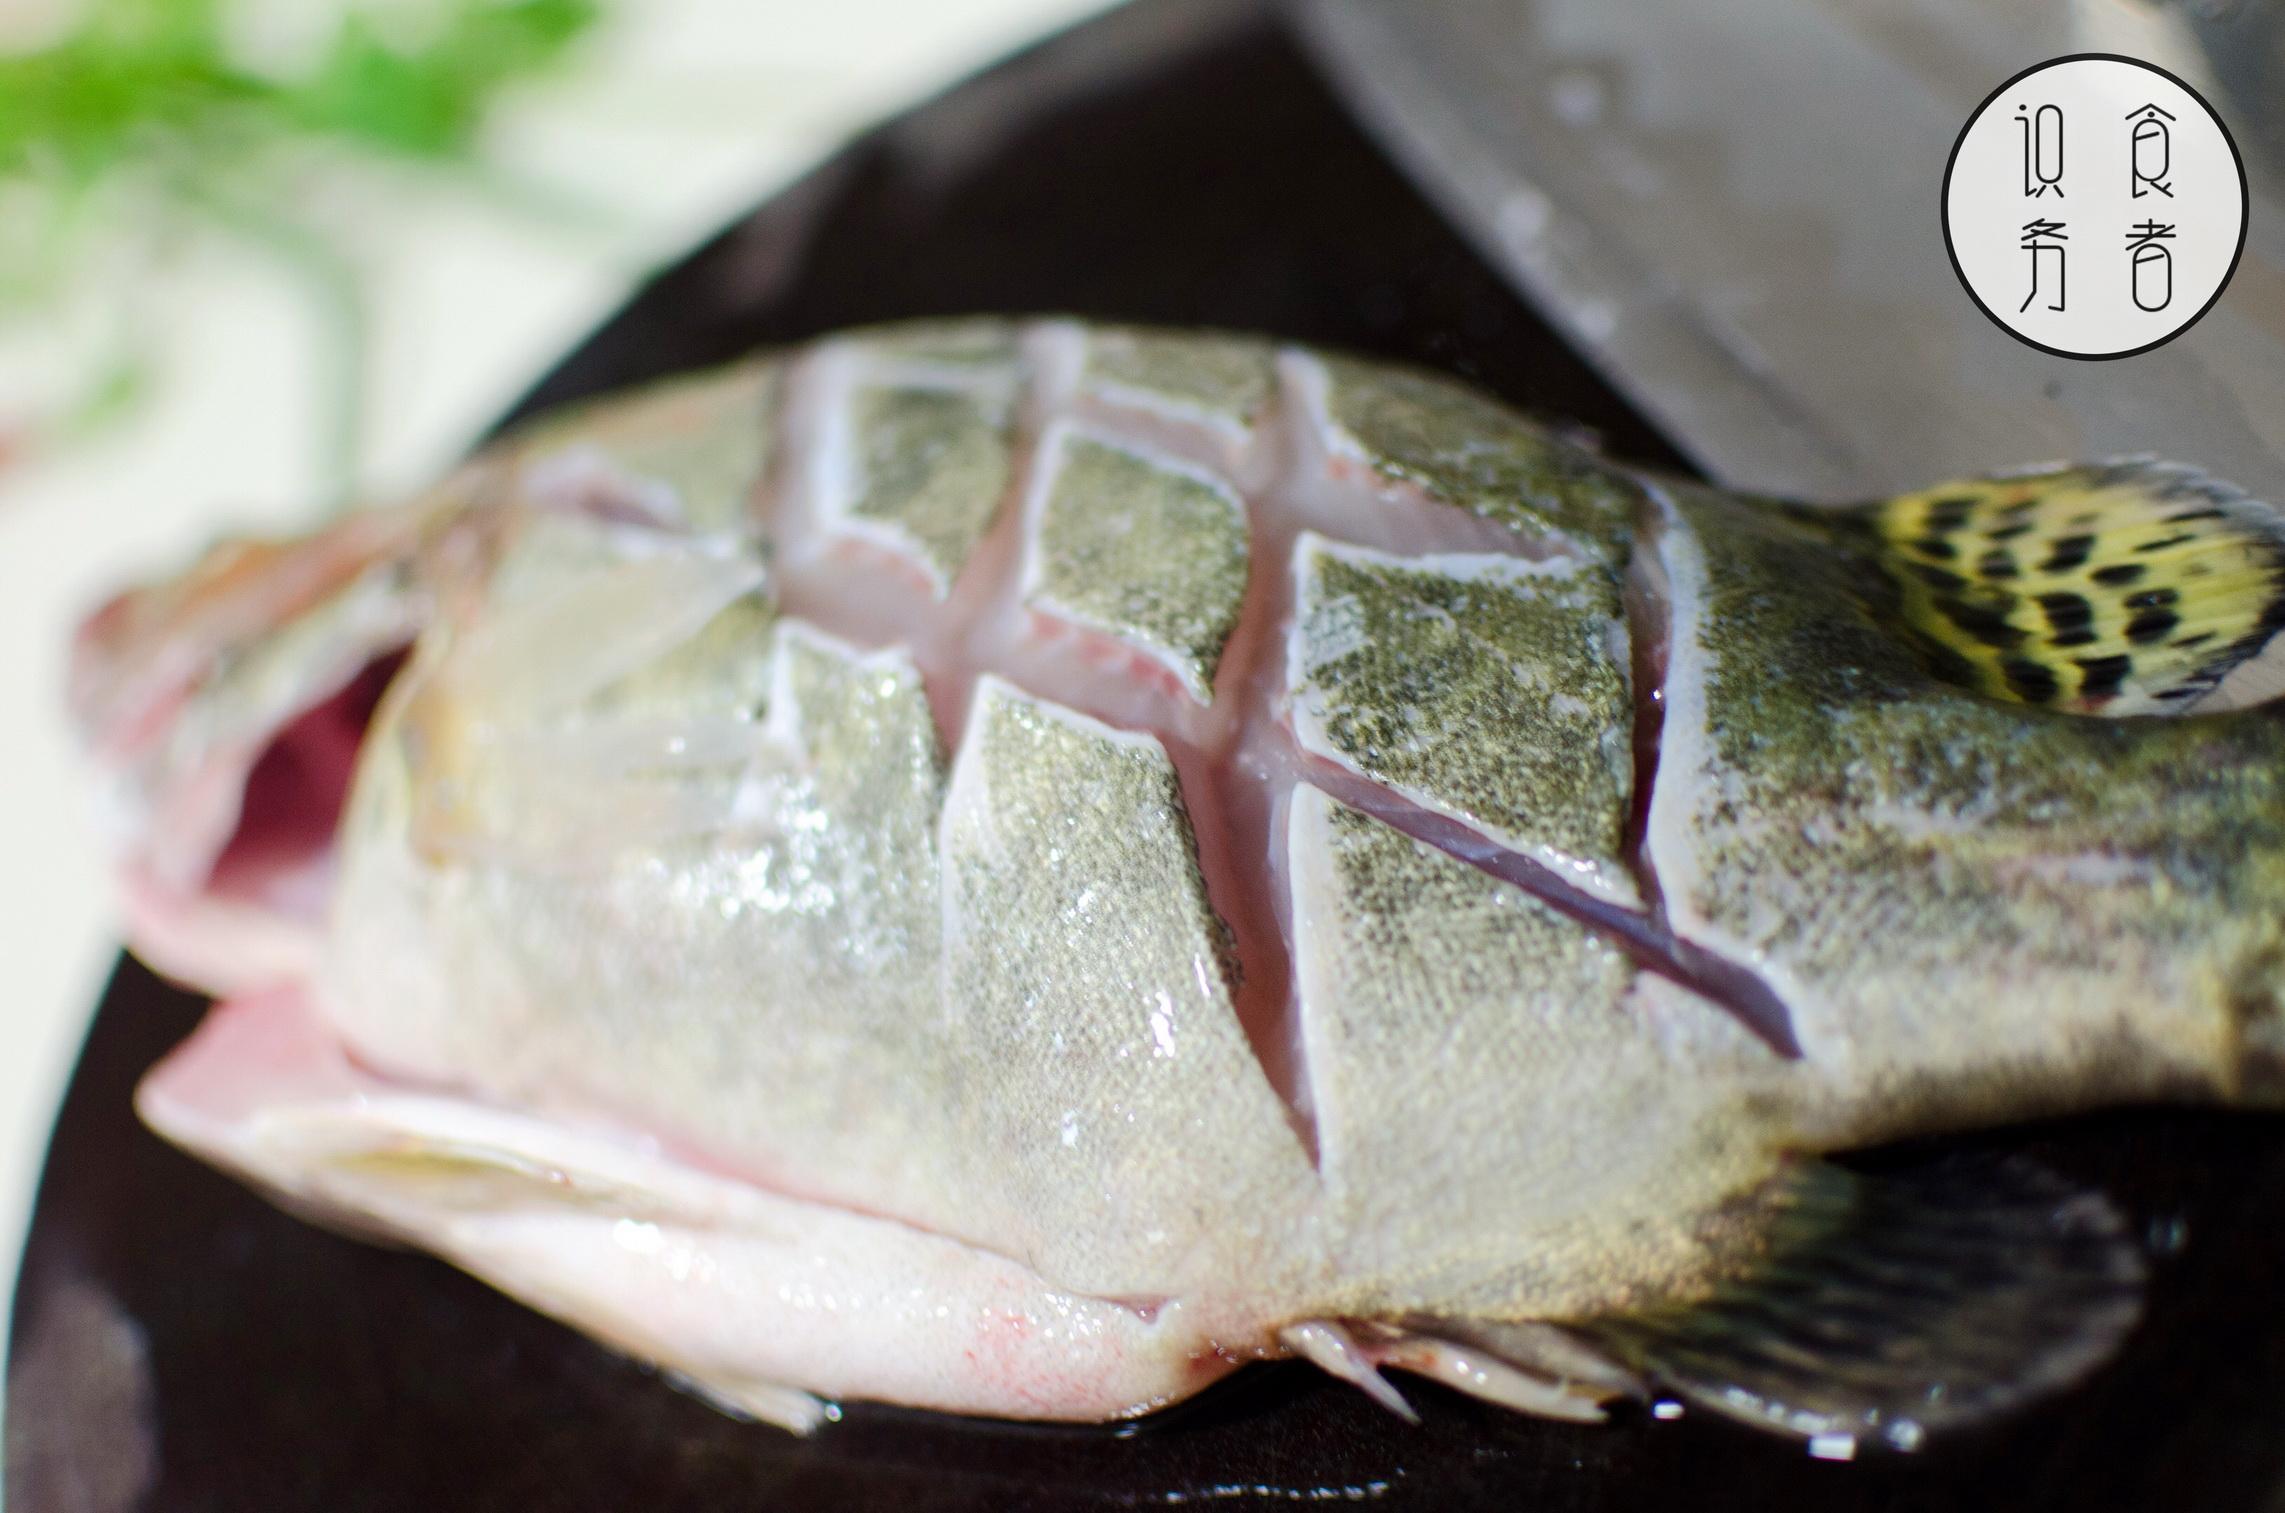 剞花刀燉的魚既漂亮又入味——從烹飪小白到廚藝高手基礎篇刀工3 - 資訊咖